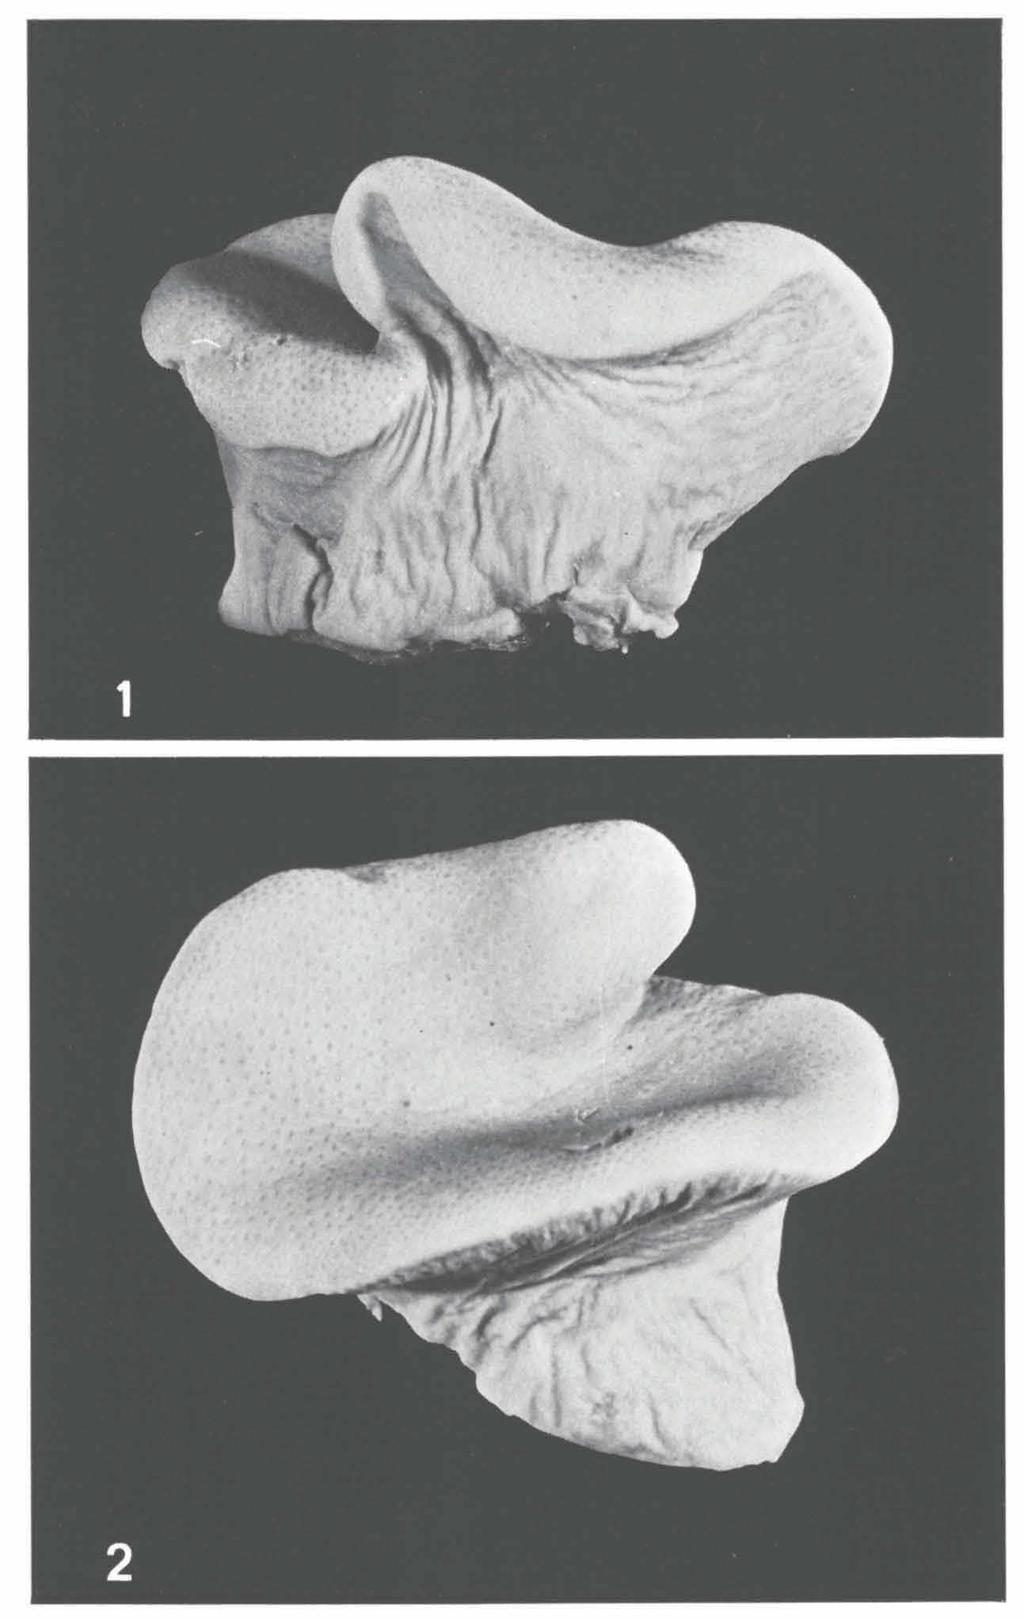 ZOOLOGISCHE MEDEDELINGEN 53 (6) Figs, ι, 2. Sarcophyton pauciplicatum sp.